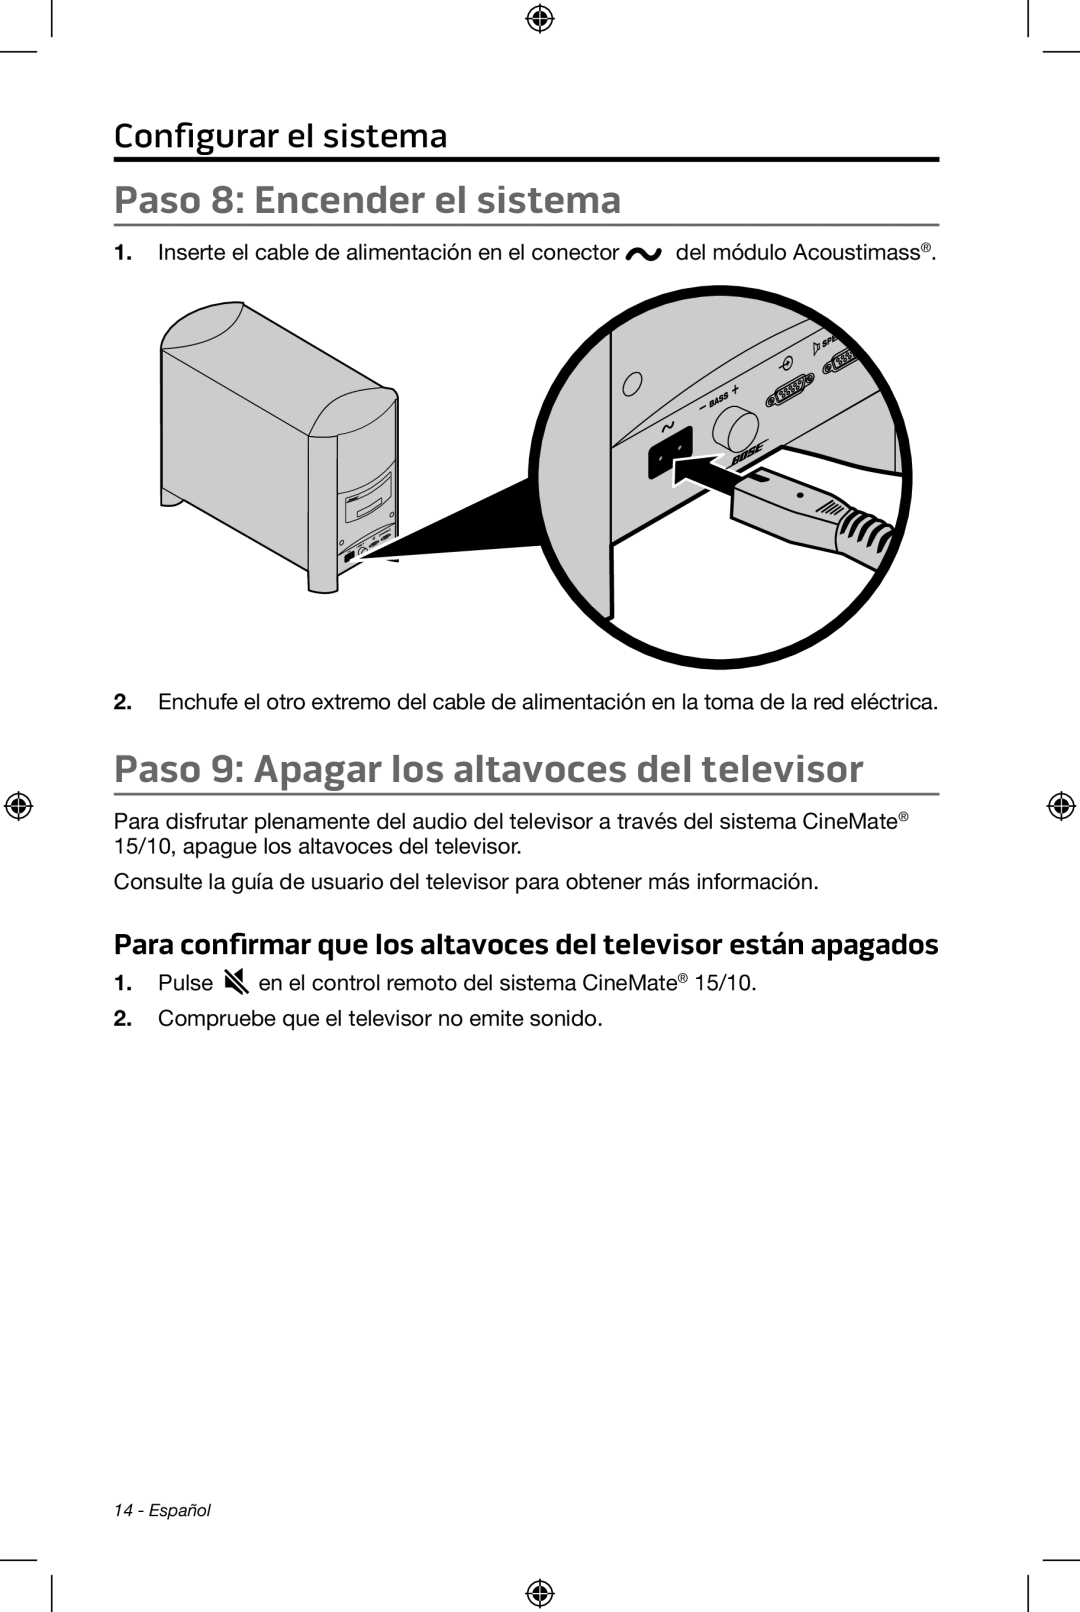 Bose CineMate 15/10 manual Paso 8: Encender el sistema, Paso 9: Apagar los altavoces del televisor, Configurar el sistema 